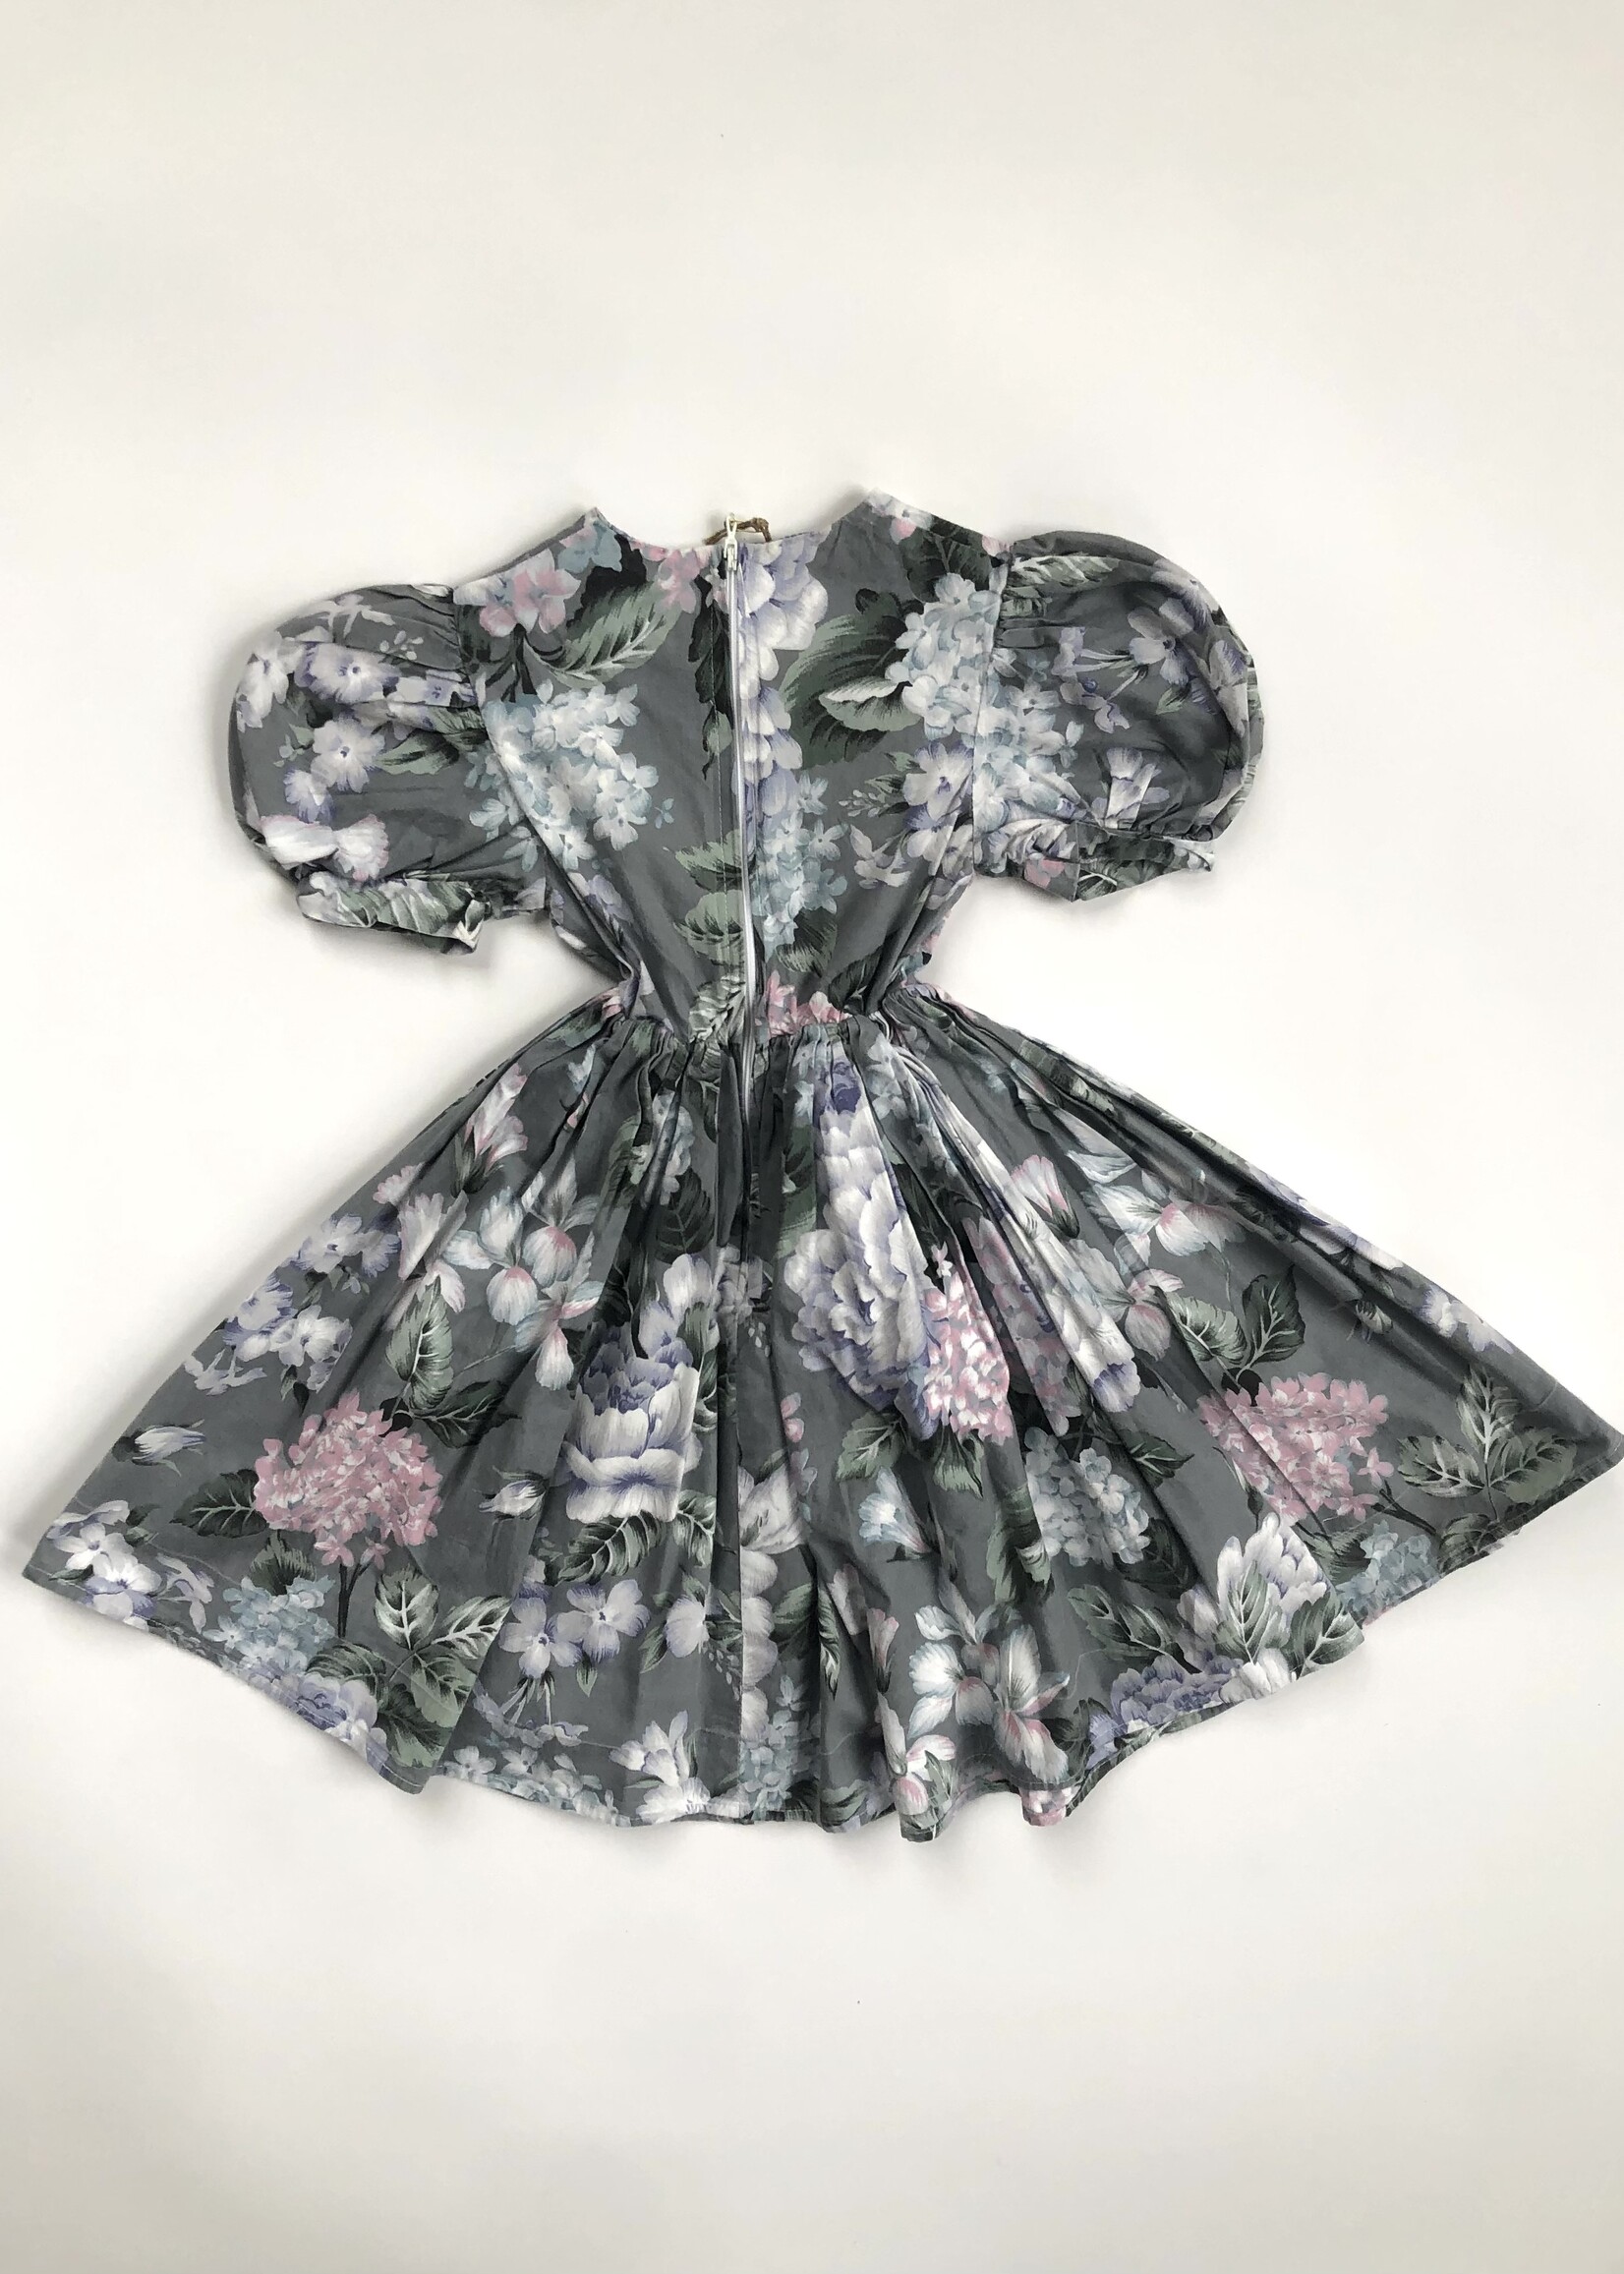 Vintage Grey floral ceremony dress 3-4y